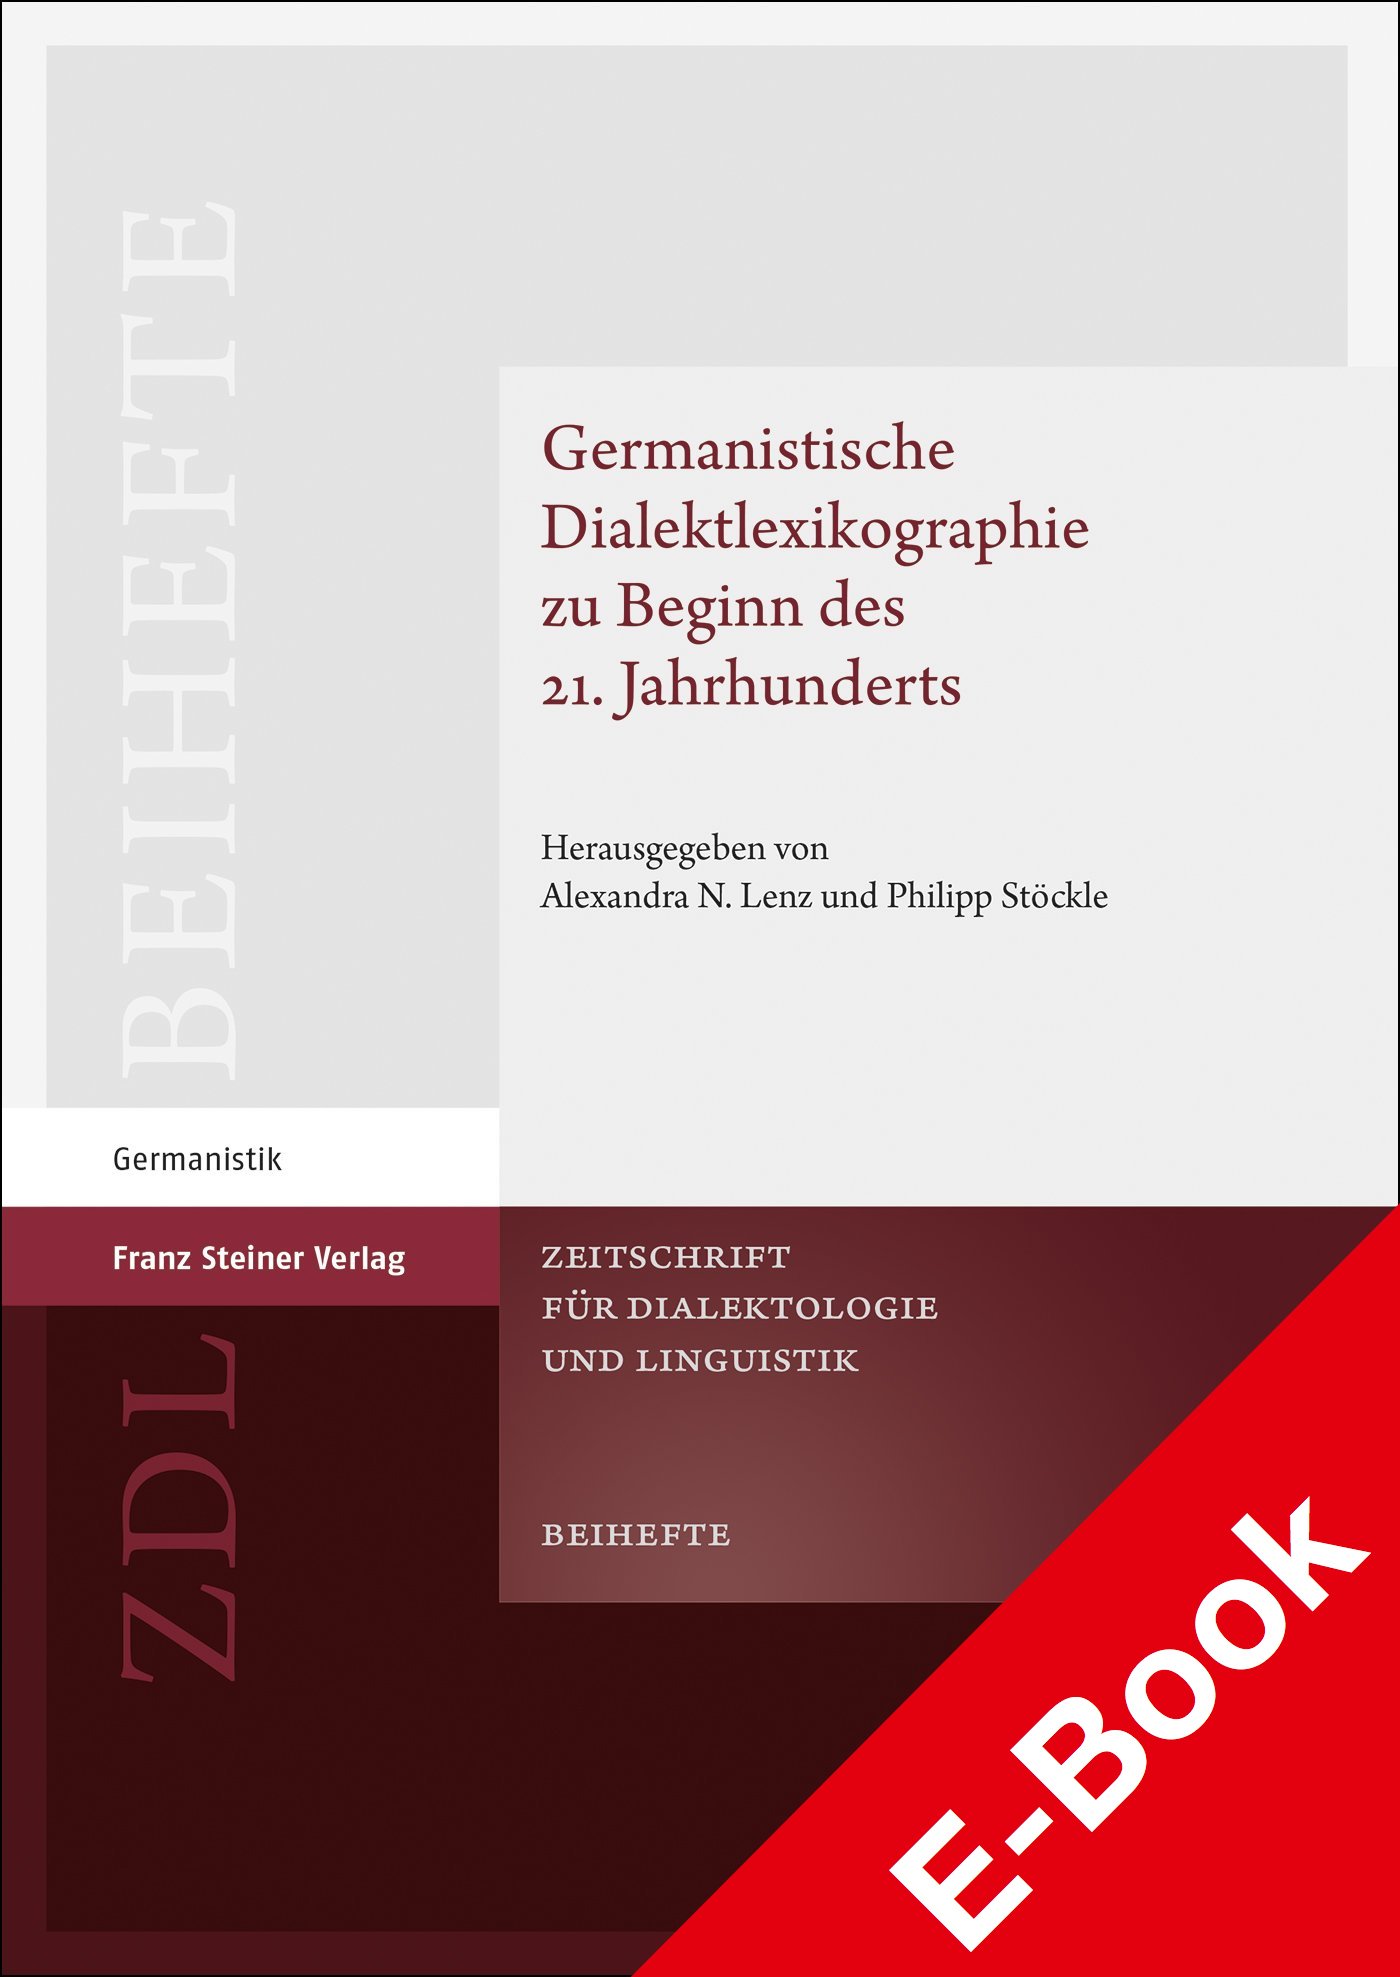 Germanistische Dialektlexikographie zu Beginn des 21. Jahrhunderts